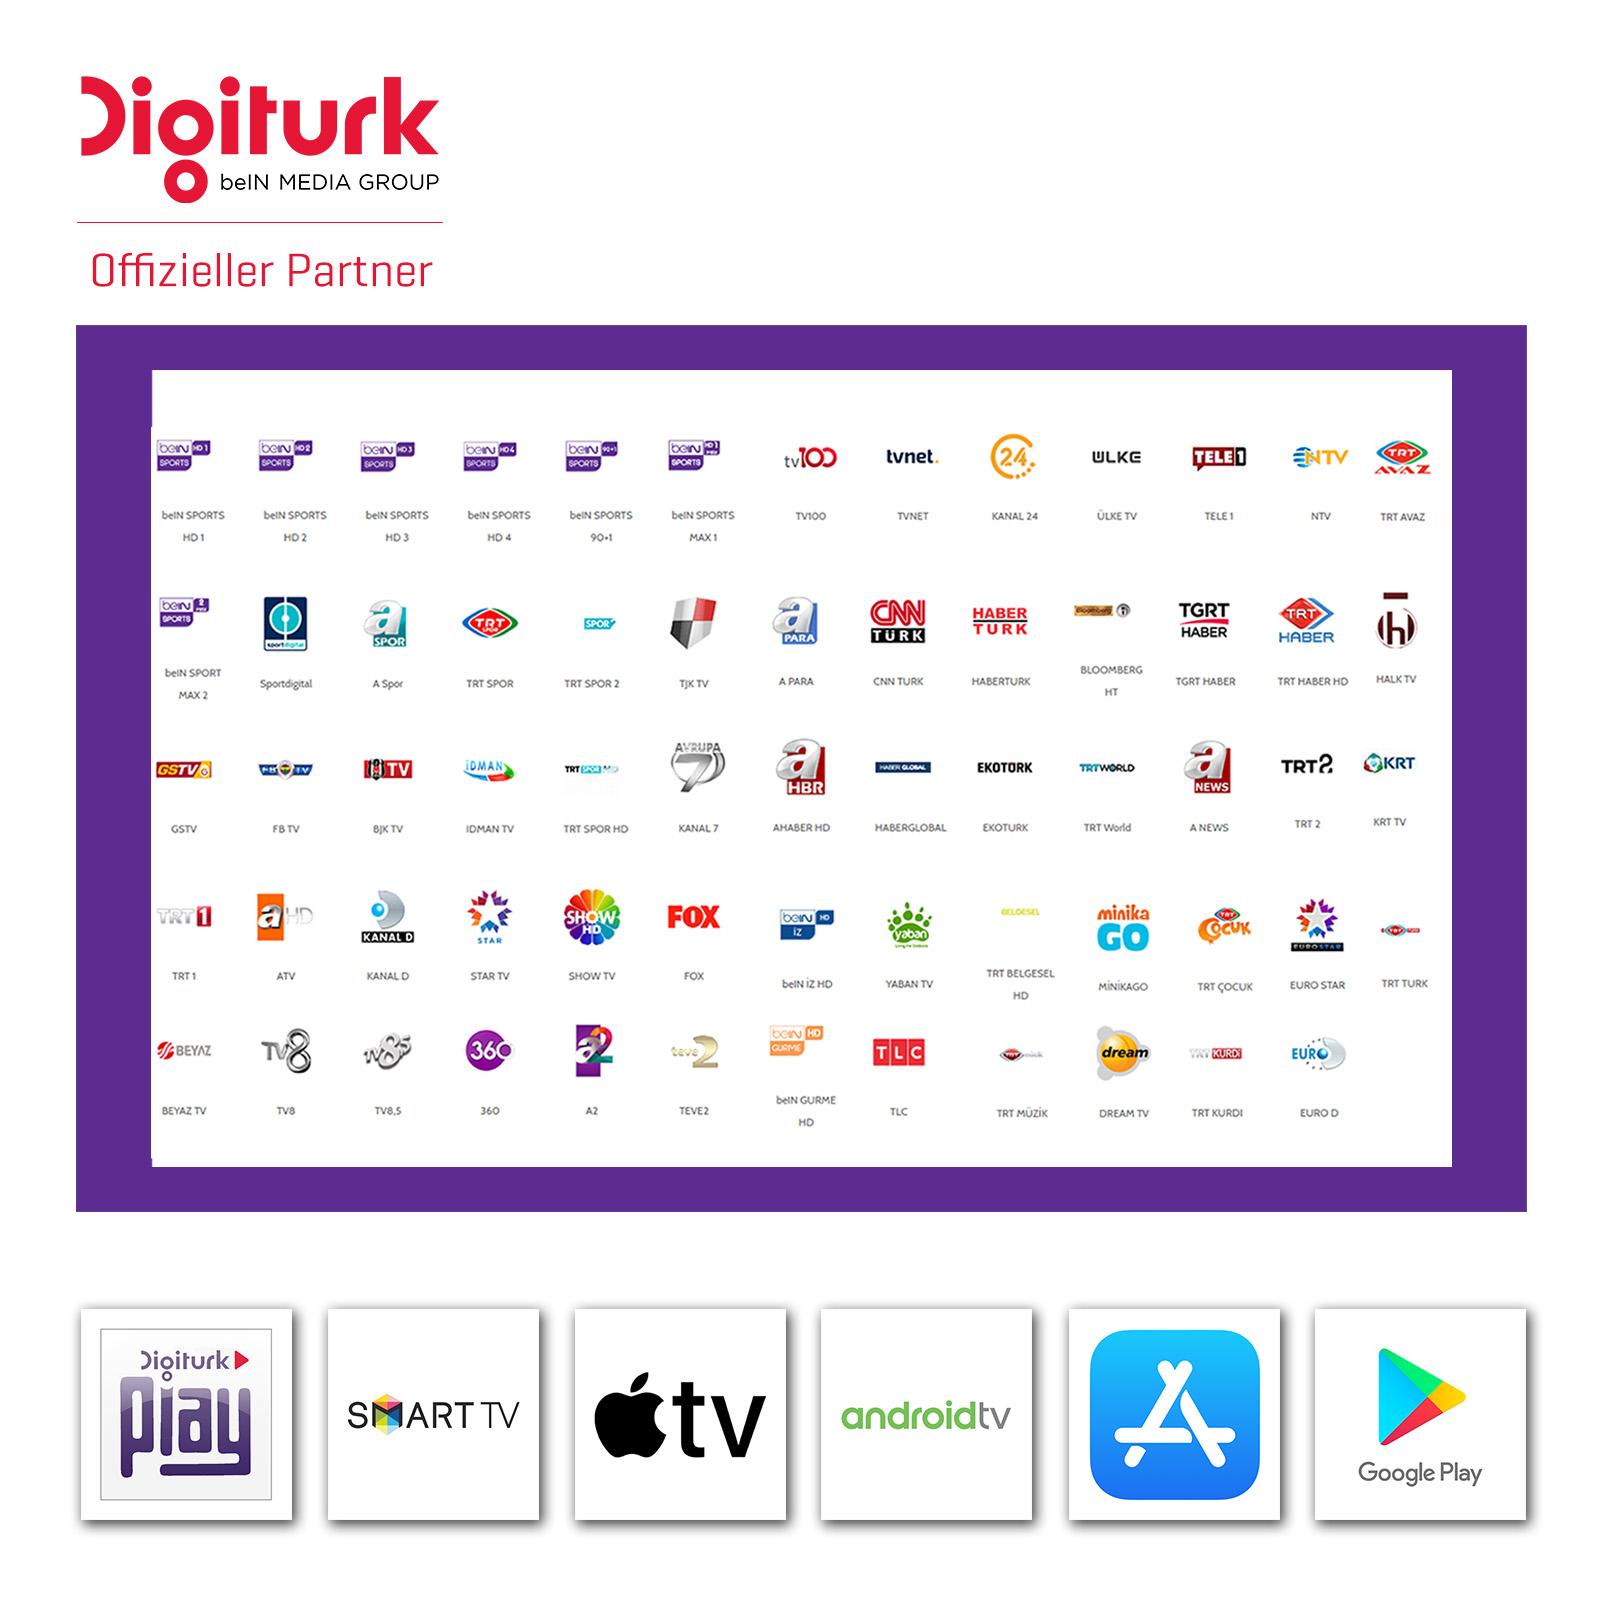 Digitürk Play beIN Sports WEB IPTV Sport and Familienpaket Monatlich 16.90€ 24 Monate Verlängerung Satfreax